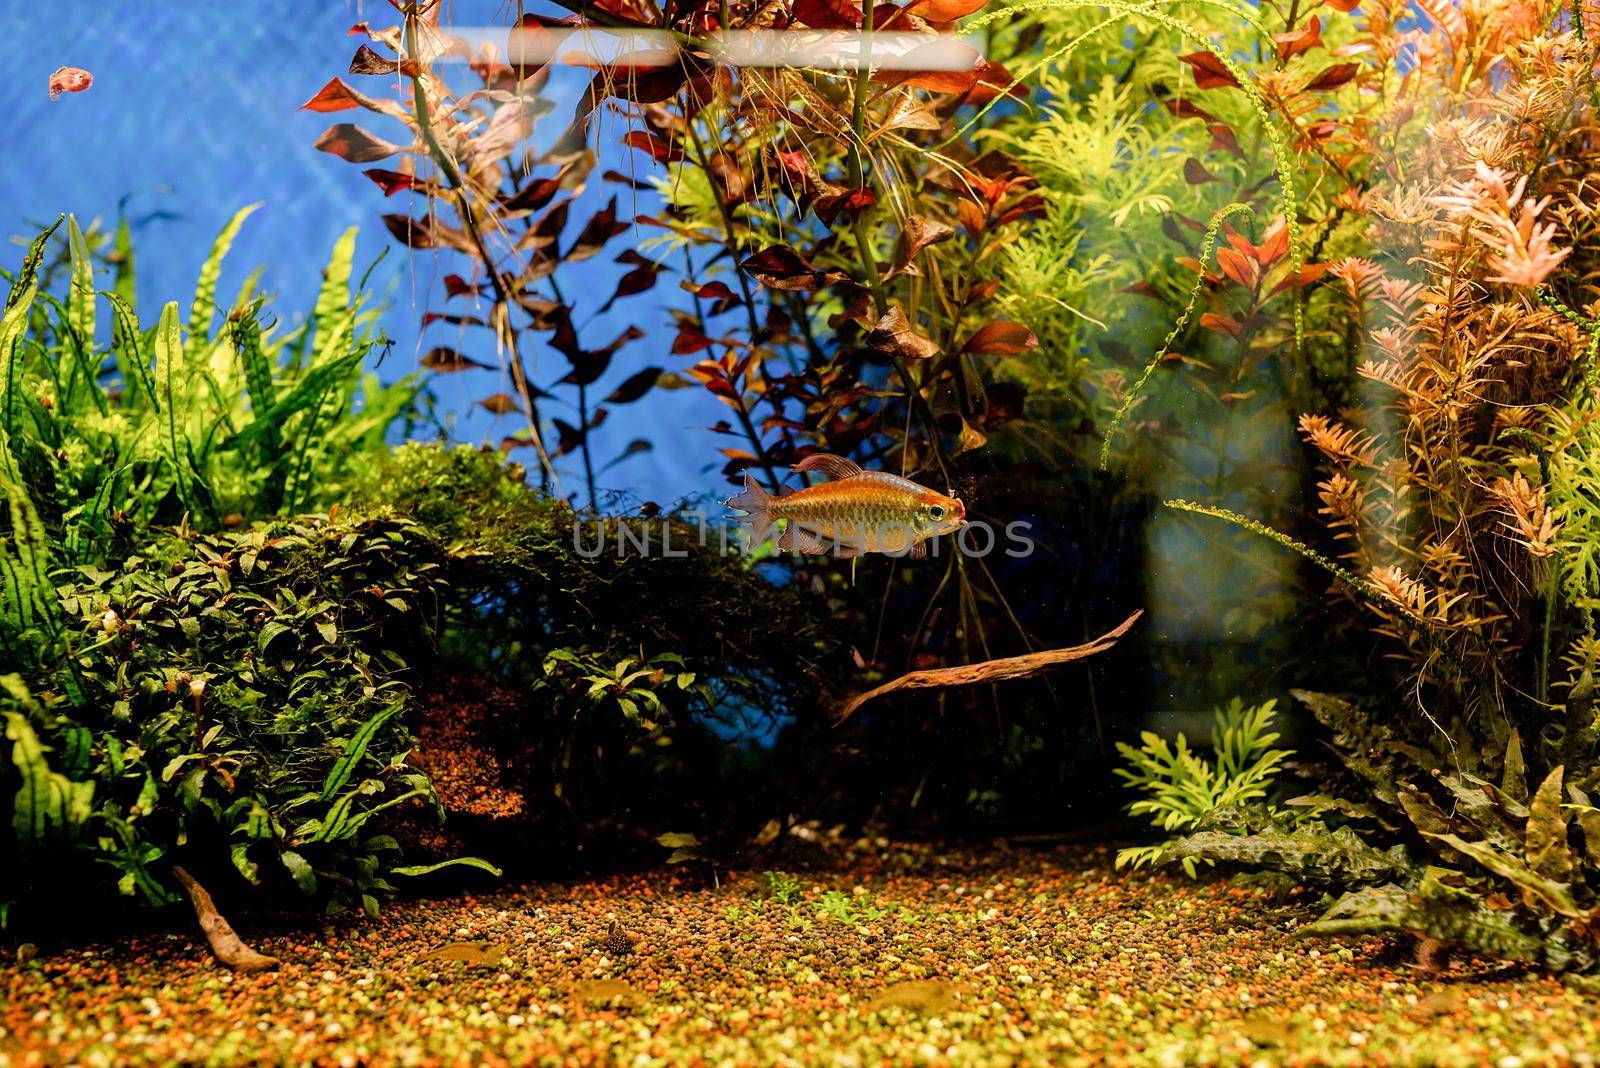 aquariums with fish in oceanarium, fish underwater